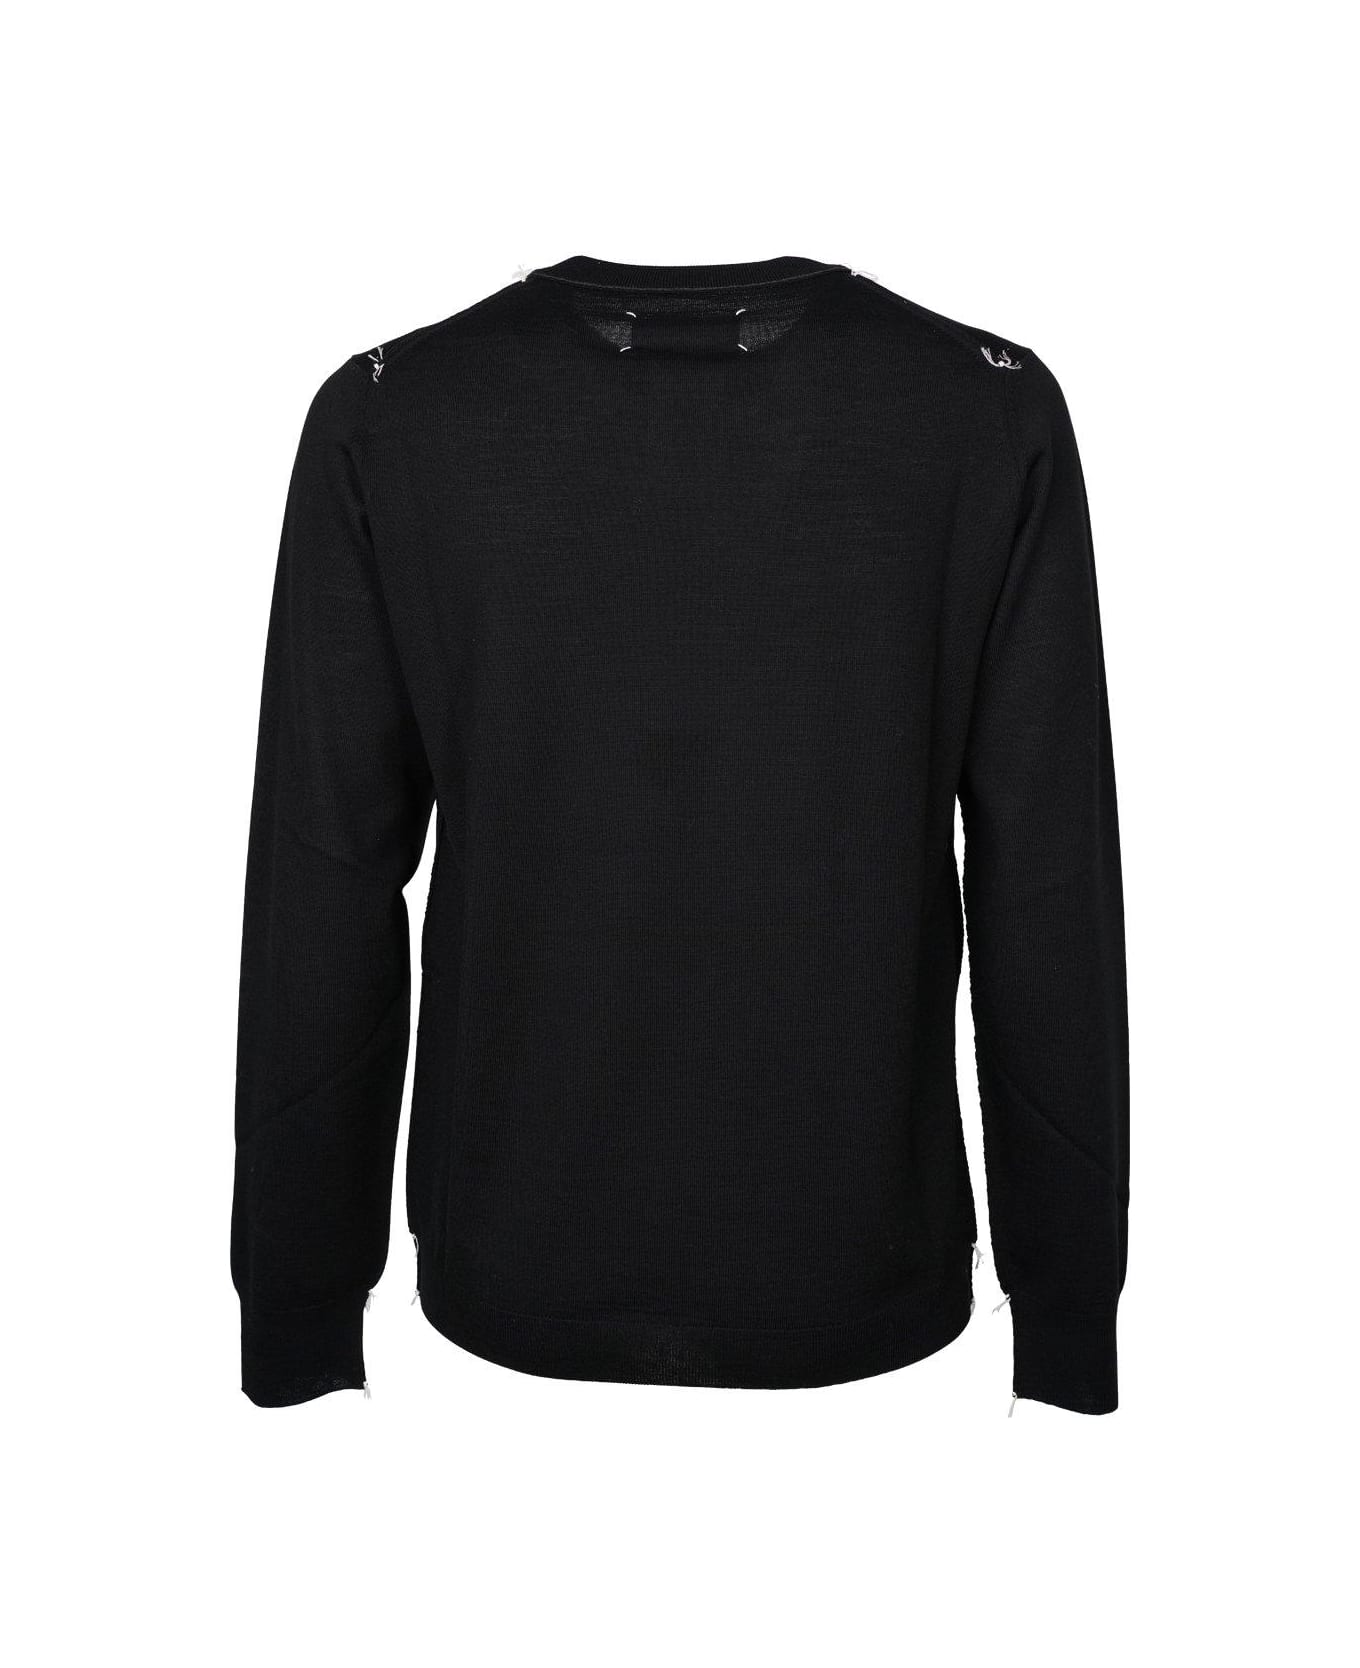 Maison Margiela Crewneck Sweater - black ニットウェア